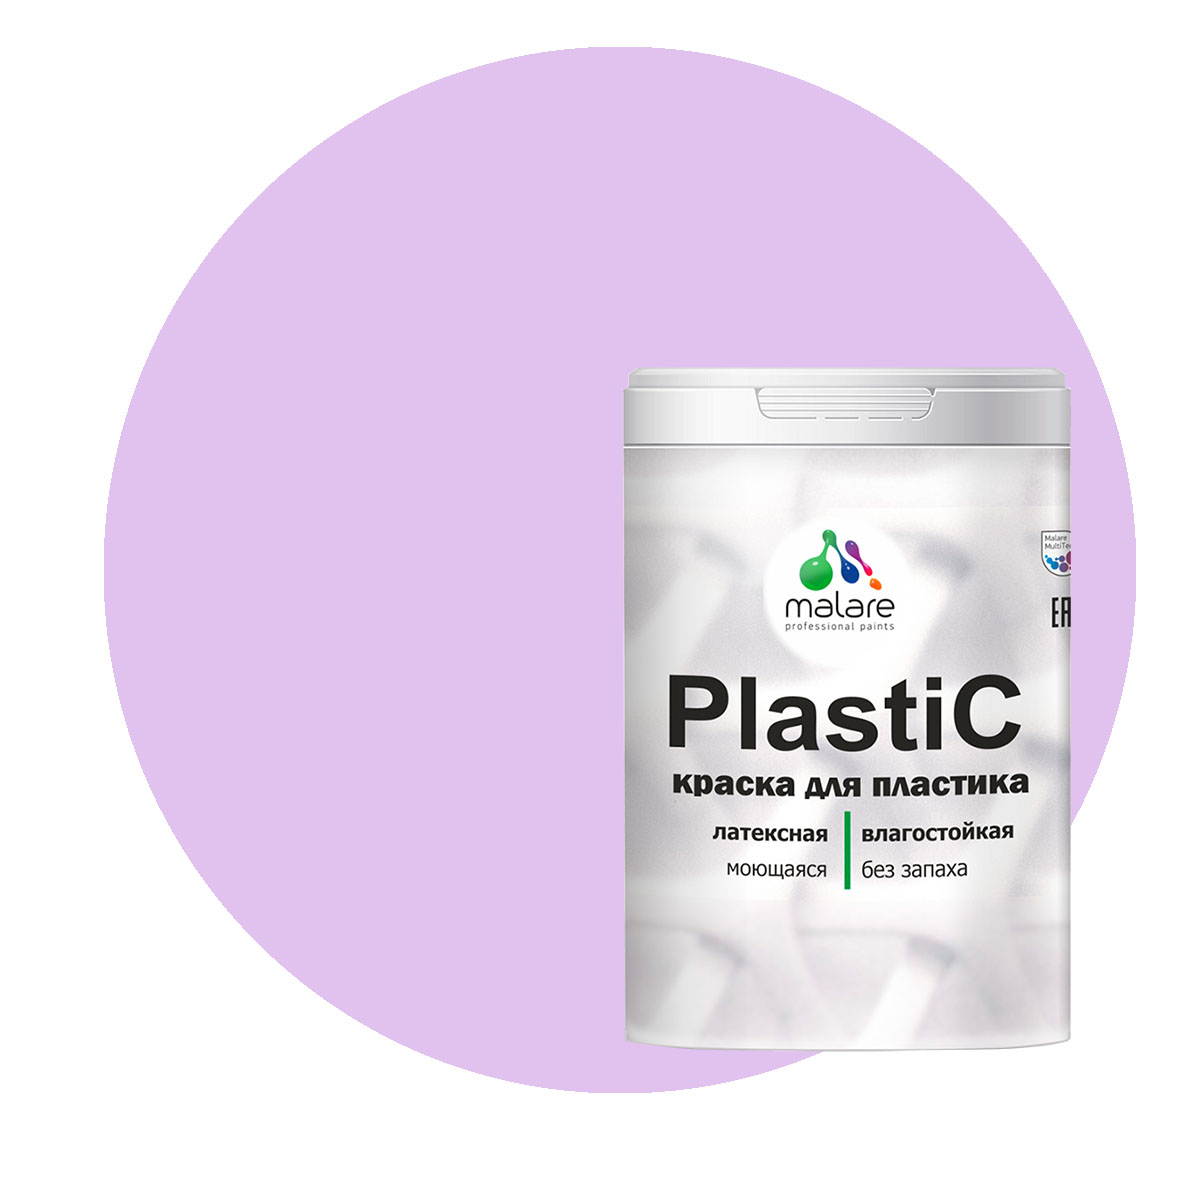 Краска Malare PlastiC для пластика, ПВХ, для сайдинга, горная лаванда, 2 кг. краска malare plastic для пластика пвх для сайдинга горная лаванда 1 кг